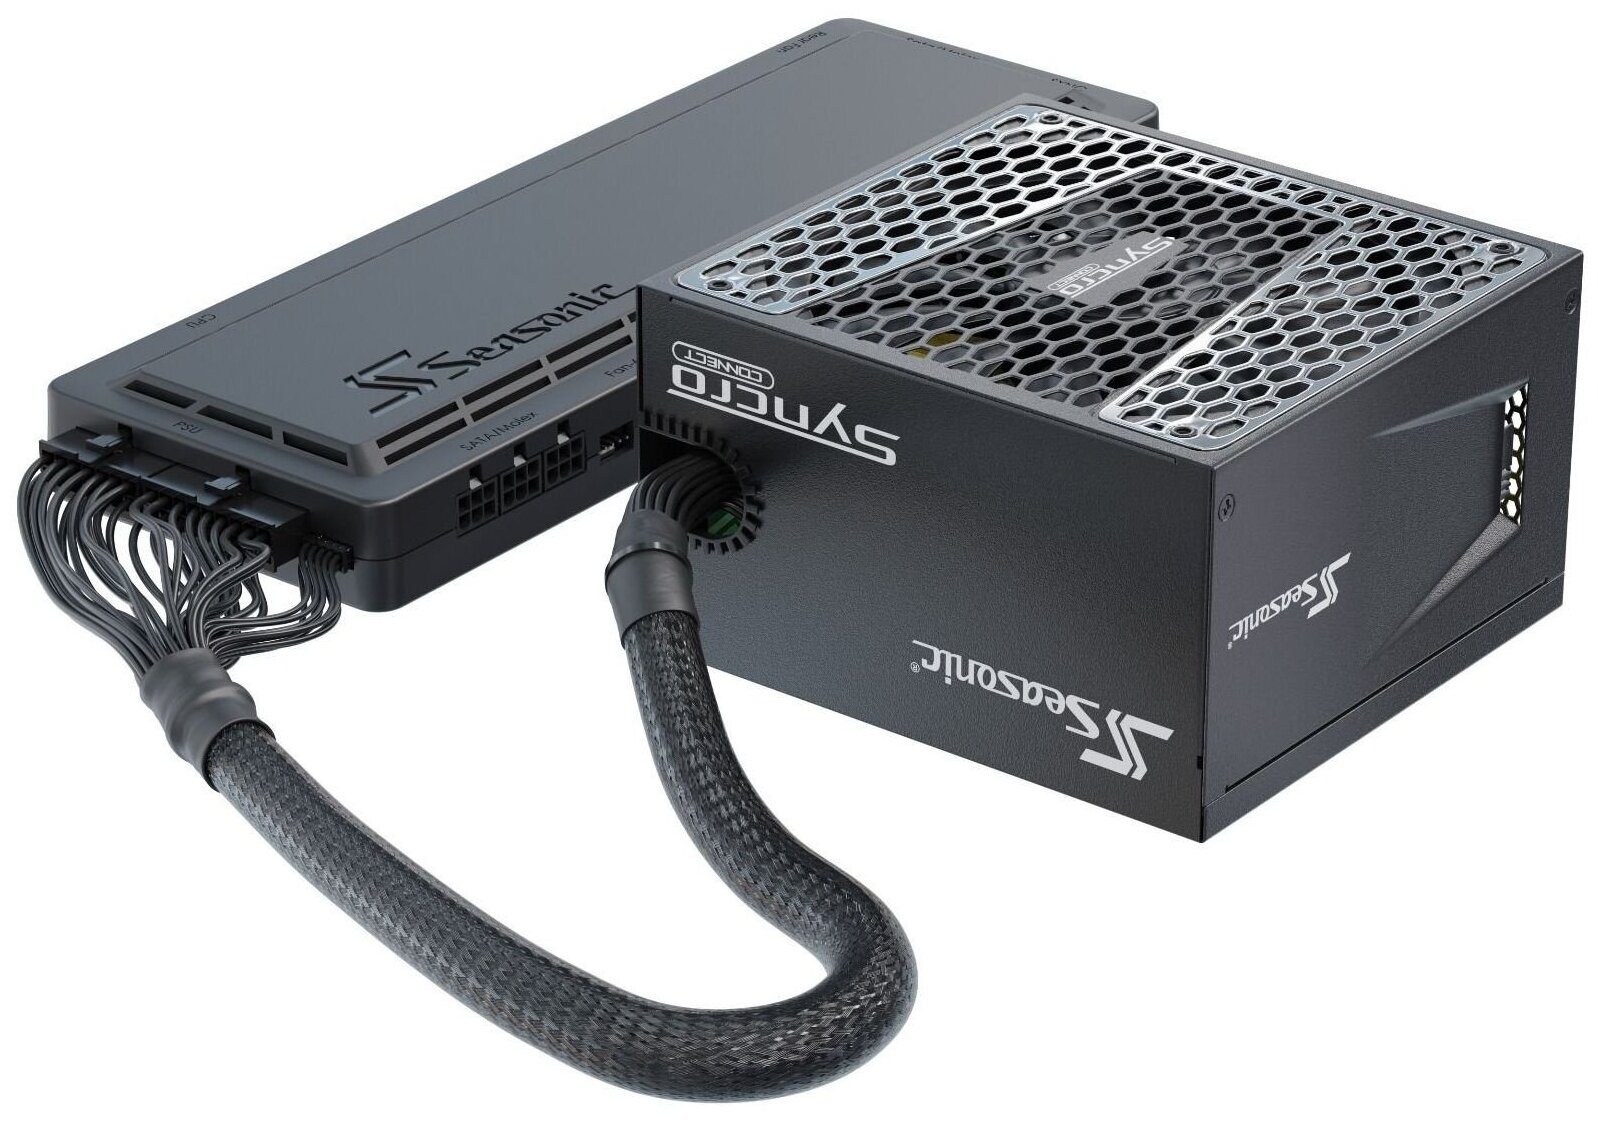 Компьютерный корпус ATX 850W Seasonic CASE SYNCRO Q704 PLATINUM черный (syncro dpc-850 (ssr-850fb))